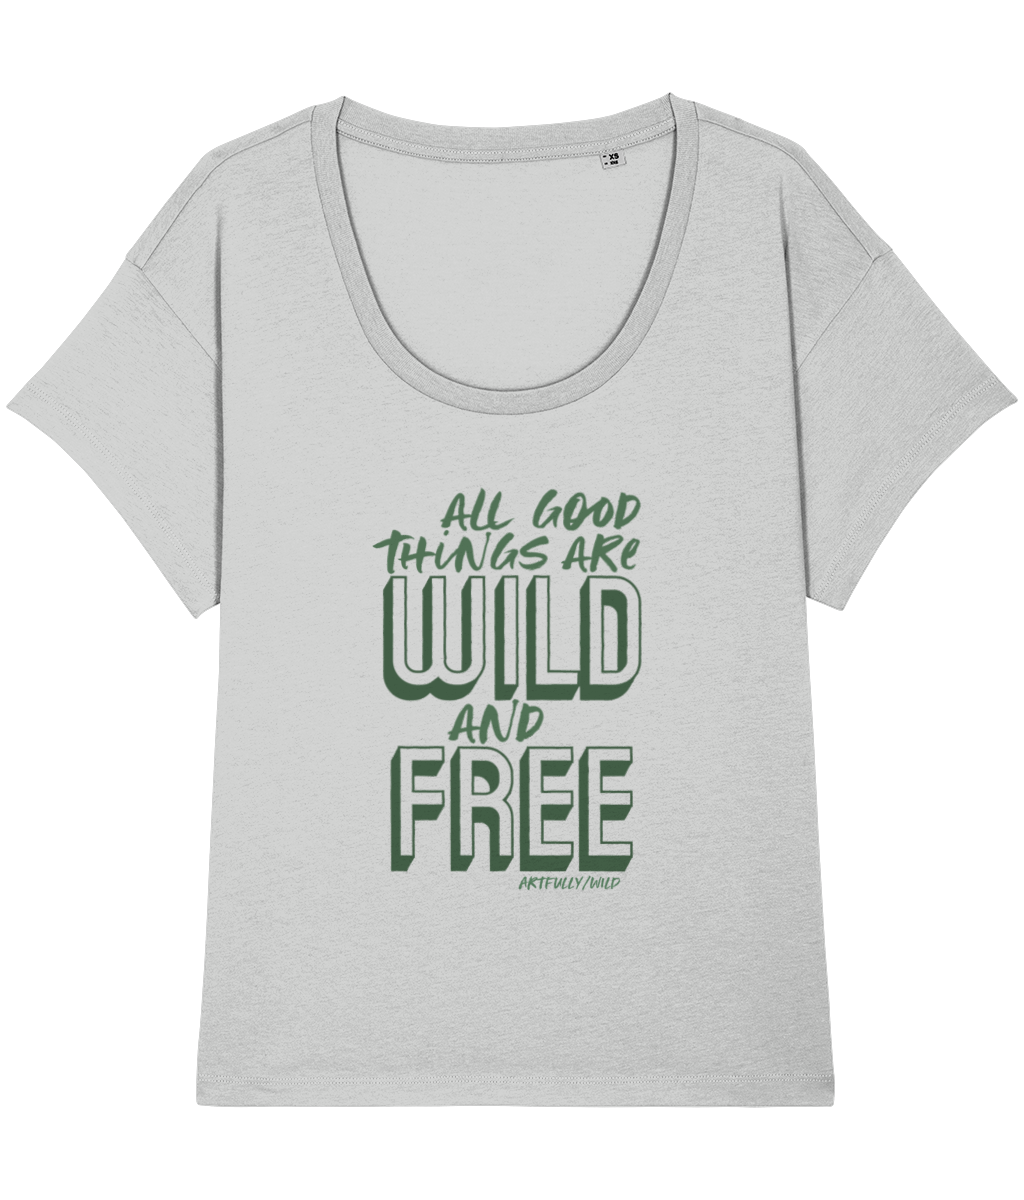 WILD AND FREE Organic Chiller T-Shirt [WOMEN]